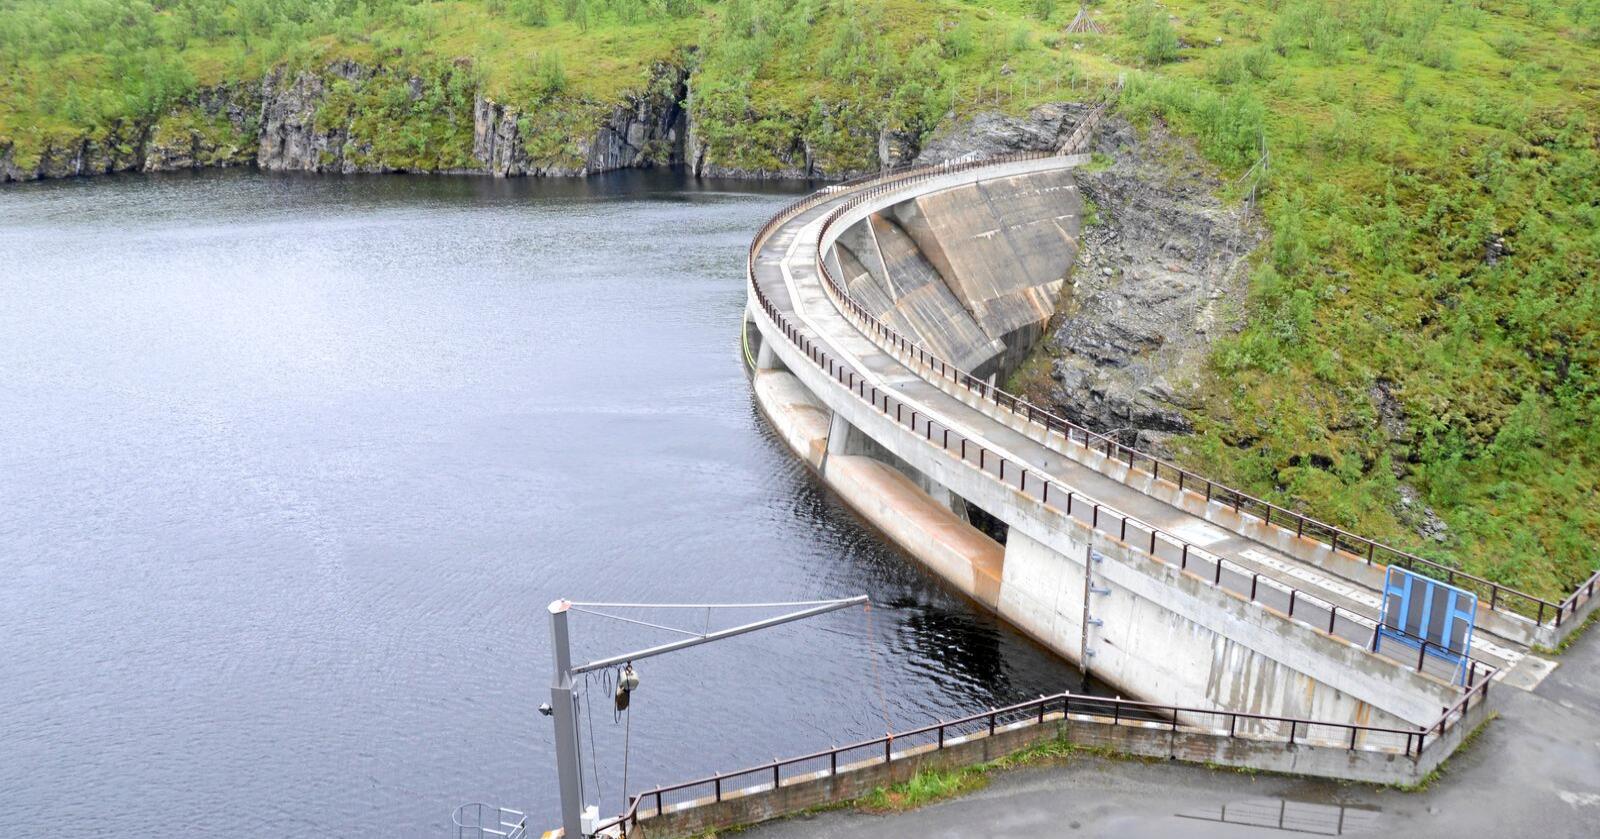 Vannkraft: Norge er i ferd med å ødelegge sin unike vannkraftkompetanse på grunn av den massive satsingen på vindkraft, skriver Bernt Øien. Foto: Mariann Tvete